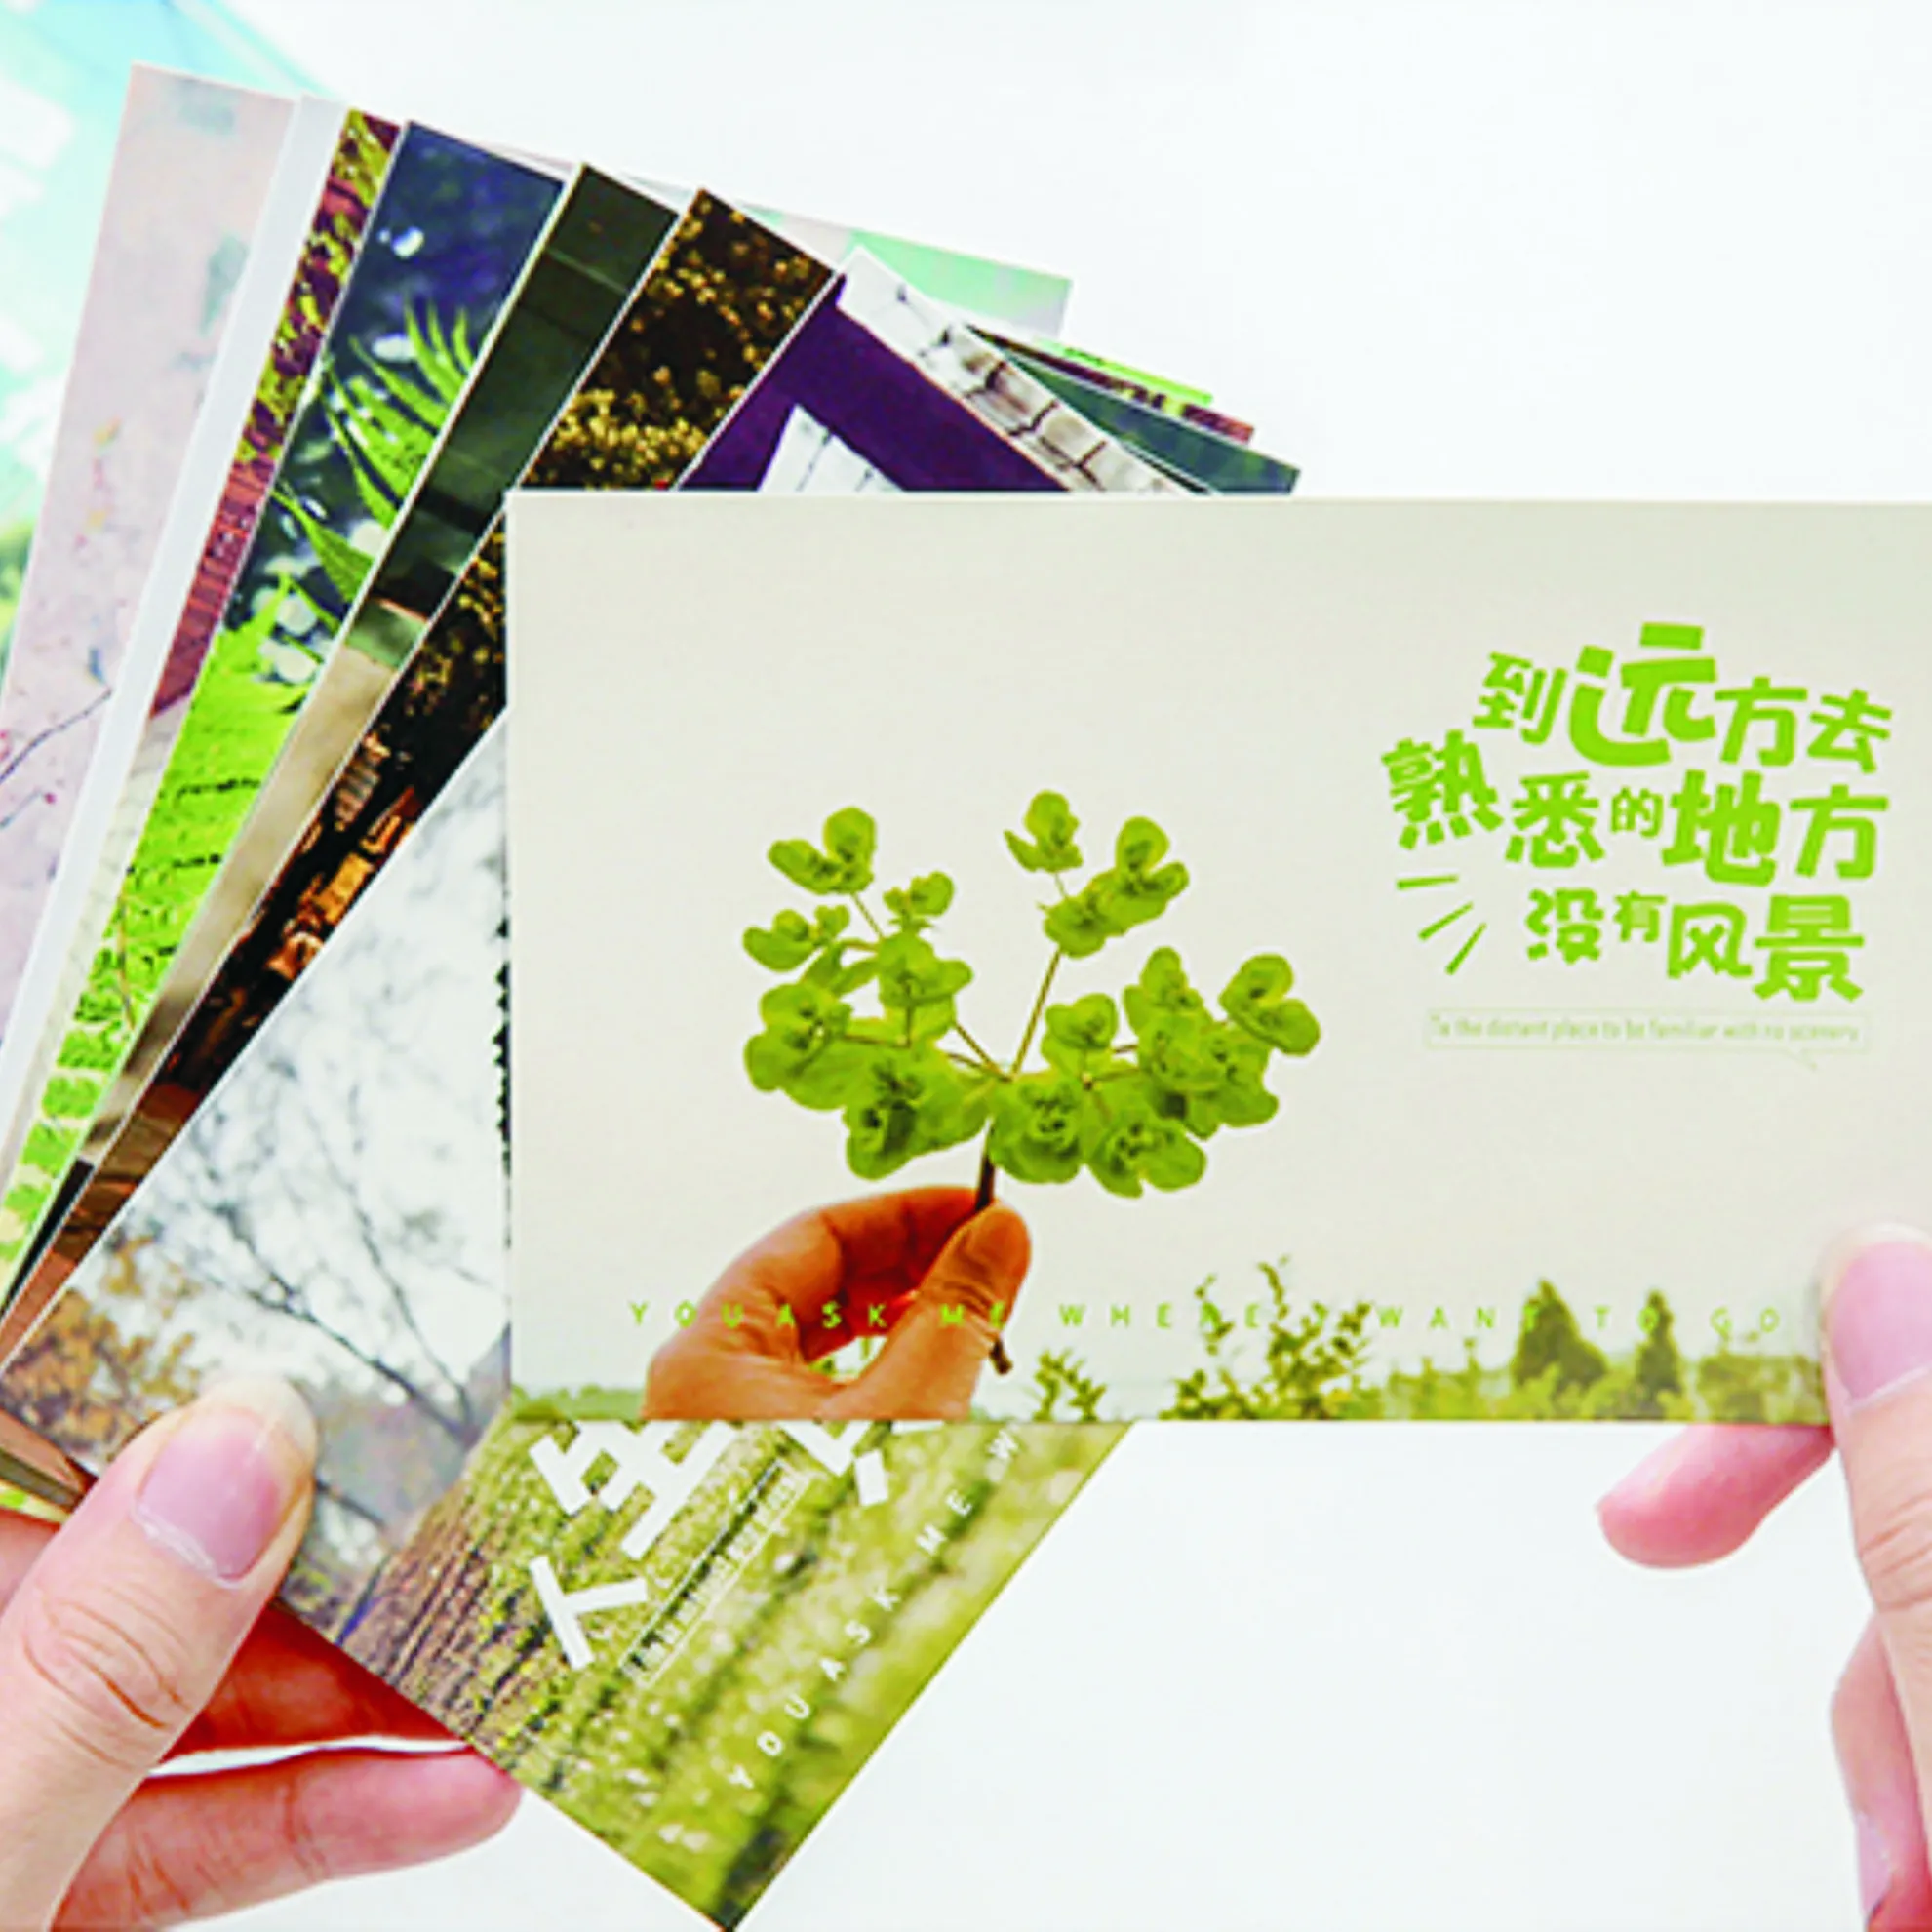 Печатная бумага Прямая продажа с фабрики полноцветная визитная карточка Pantone Горячая индивидуальная открытка